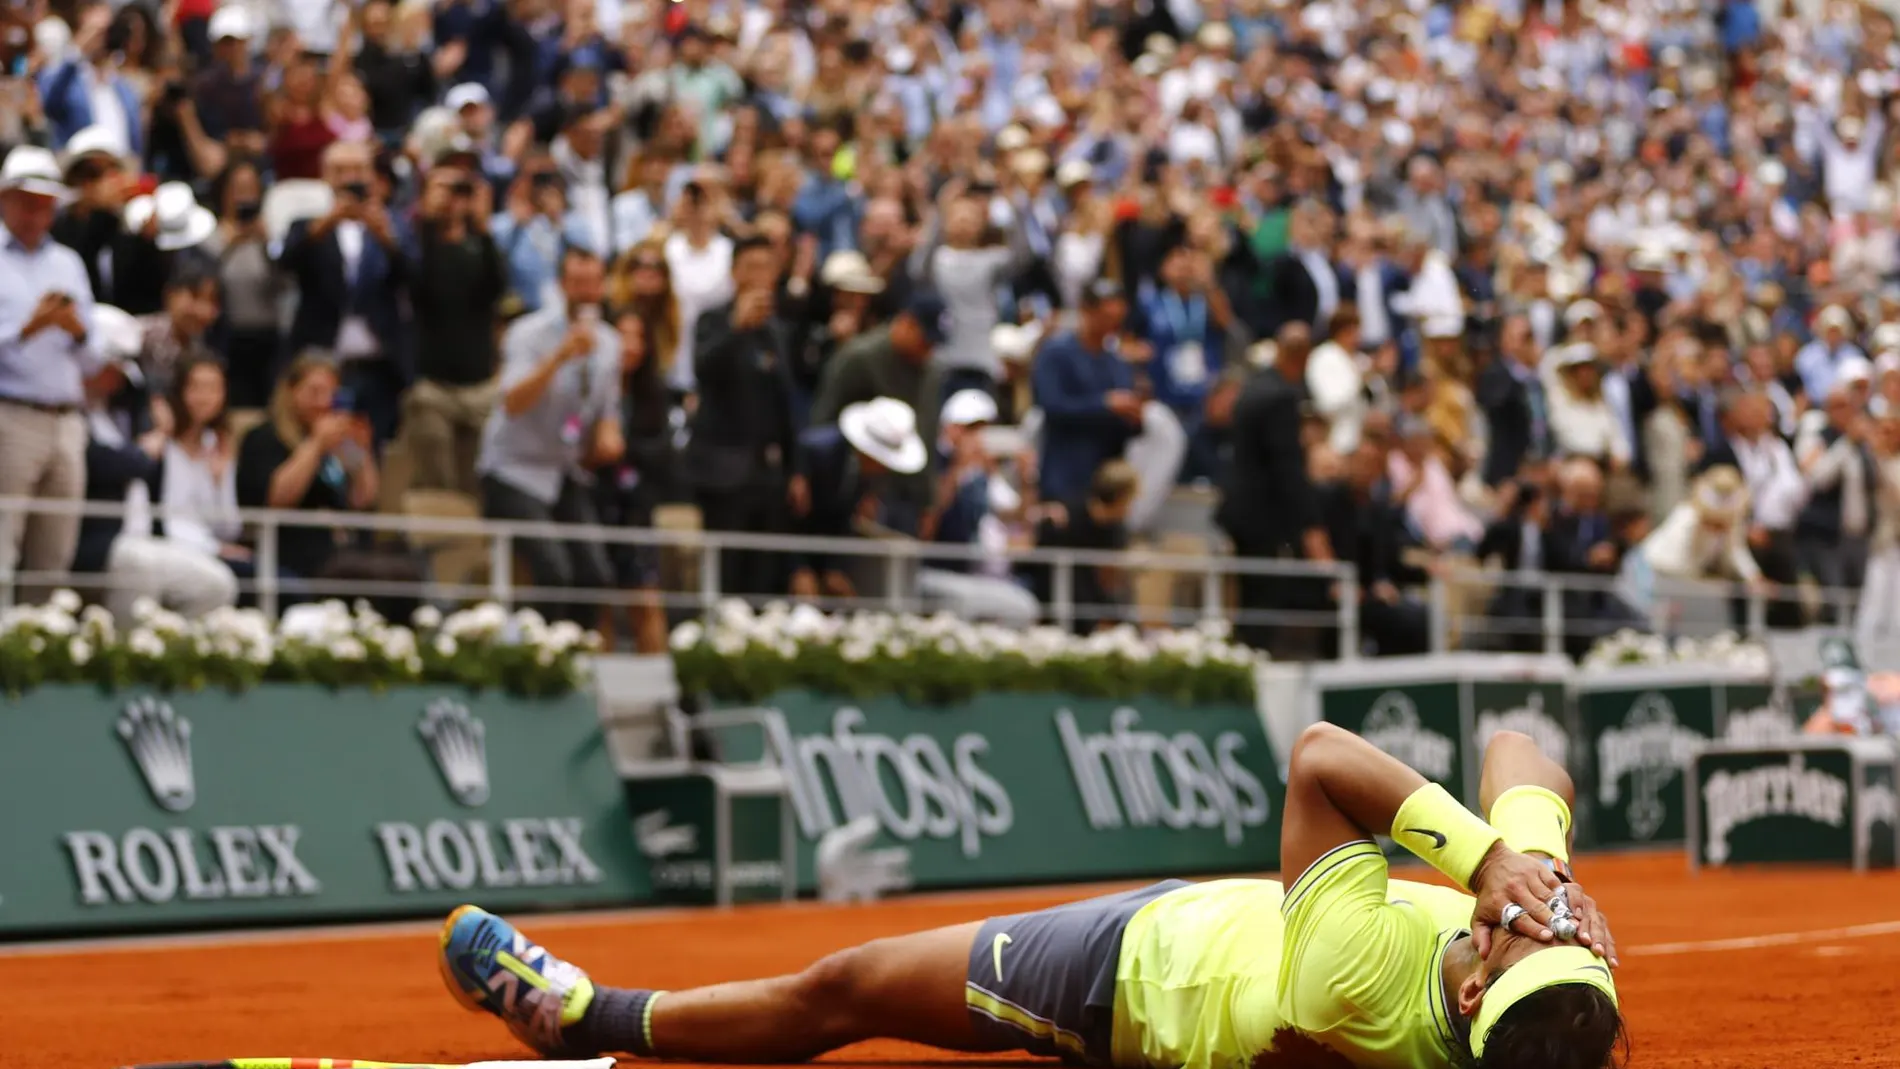 Las pistas de Roland Garros pueden quedarse vacías para la próxima edición